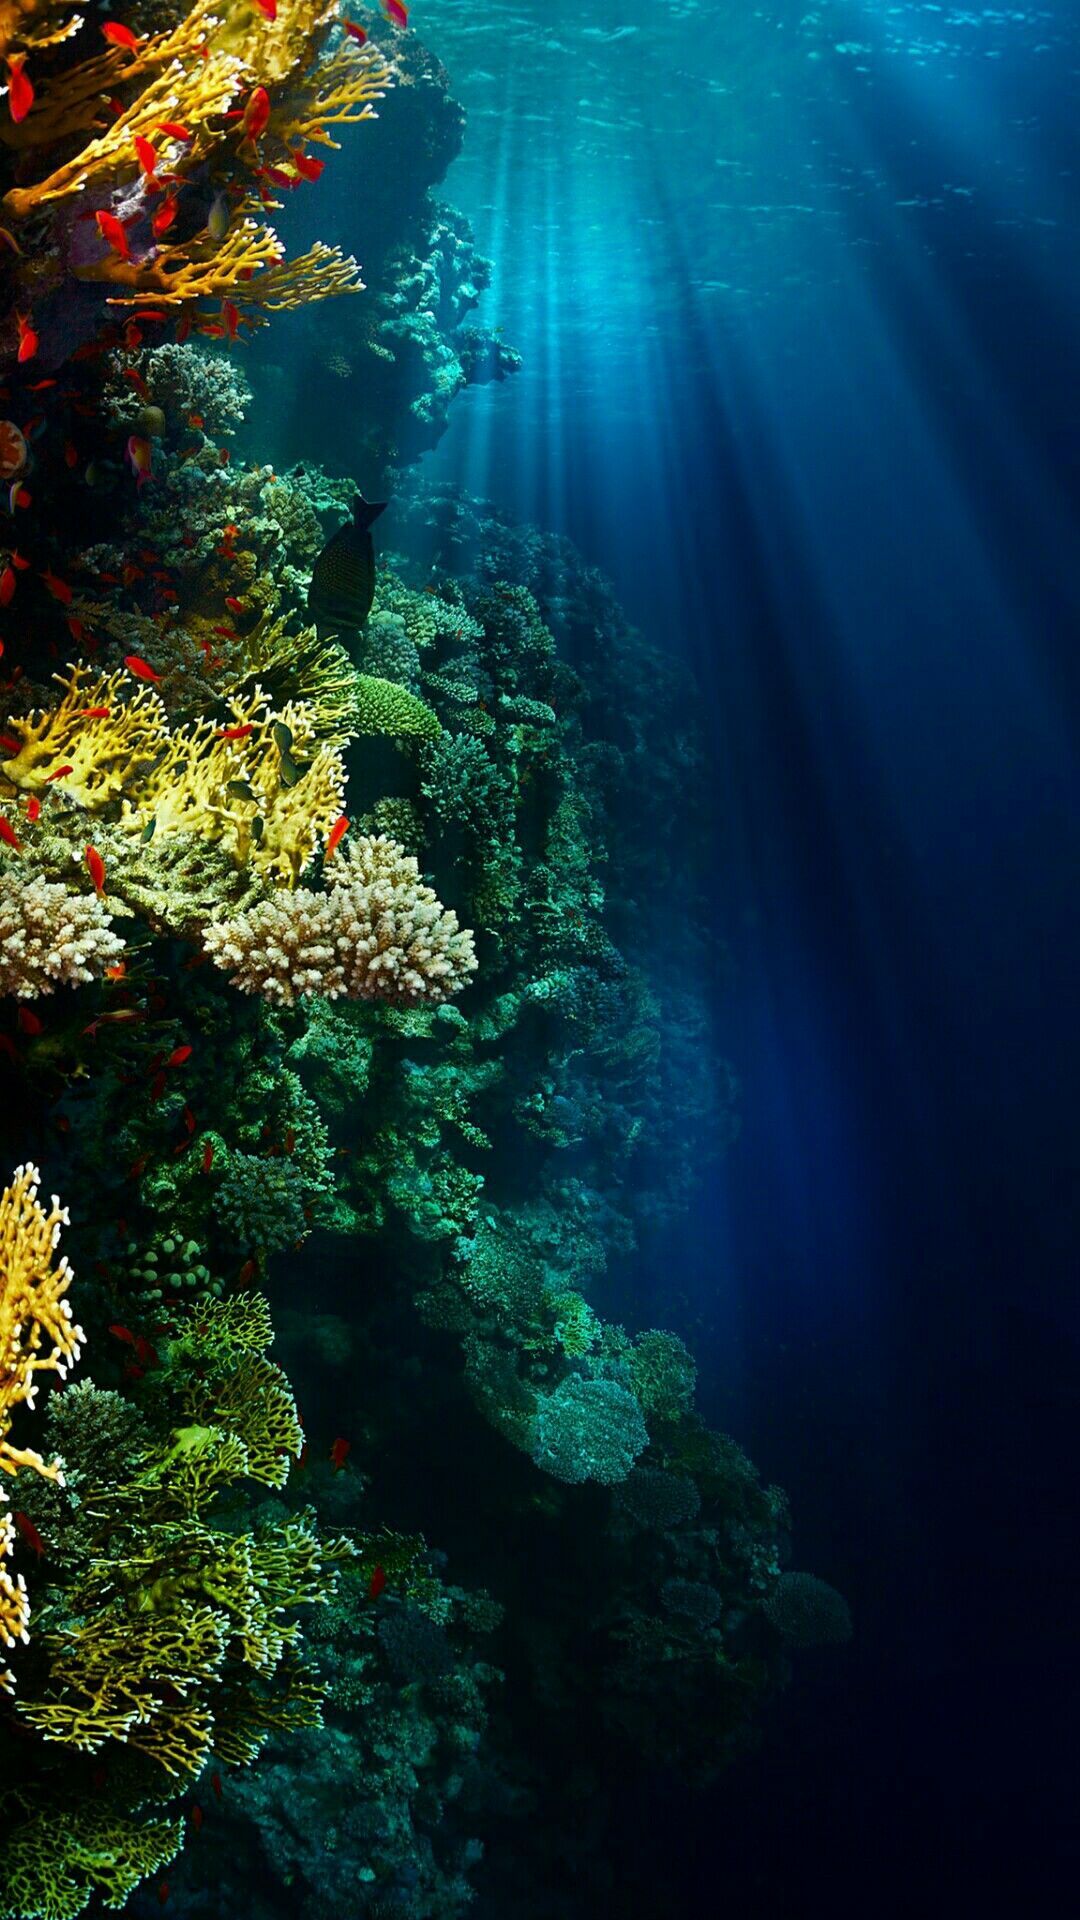 Underwater Wallpaper. Underwater wallpaper, Ocean wallpaper, S8